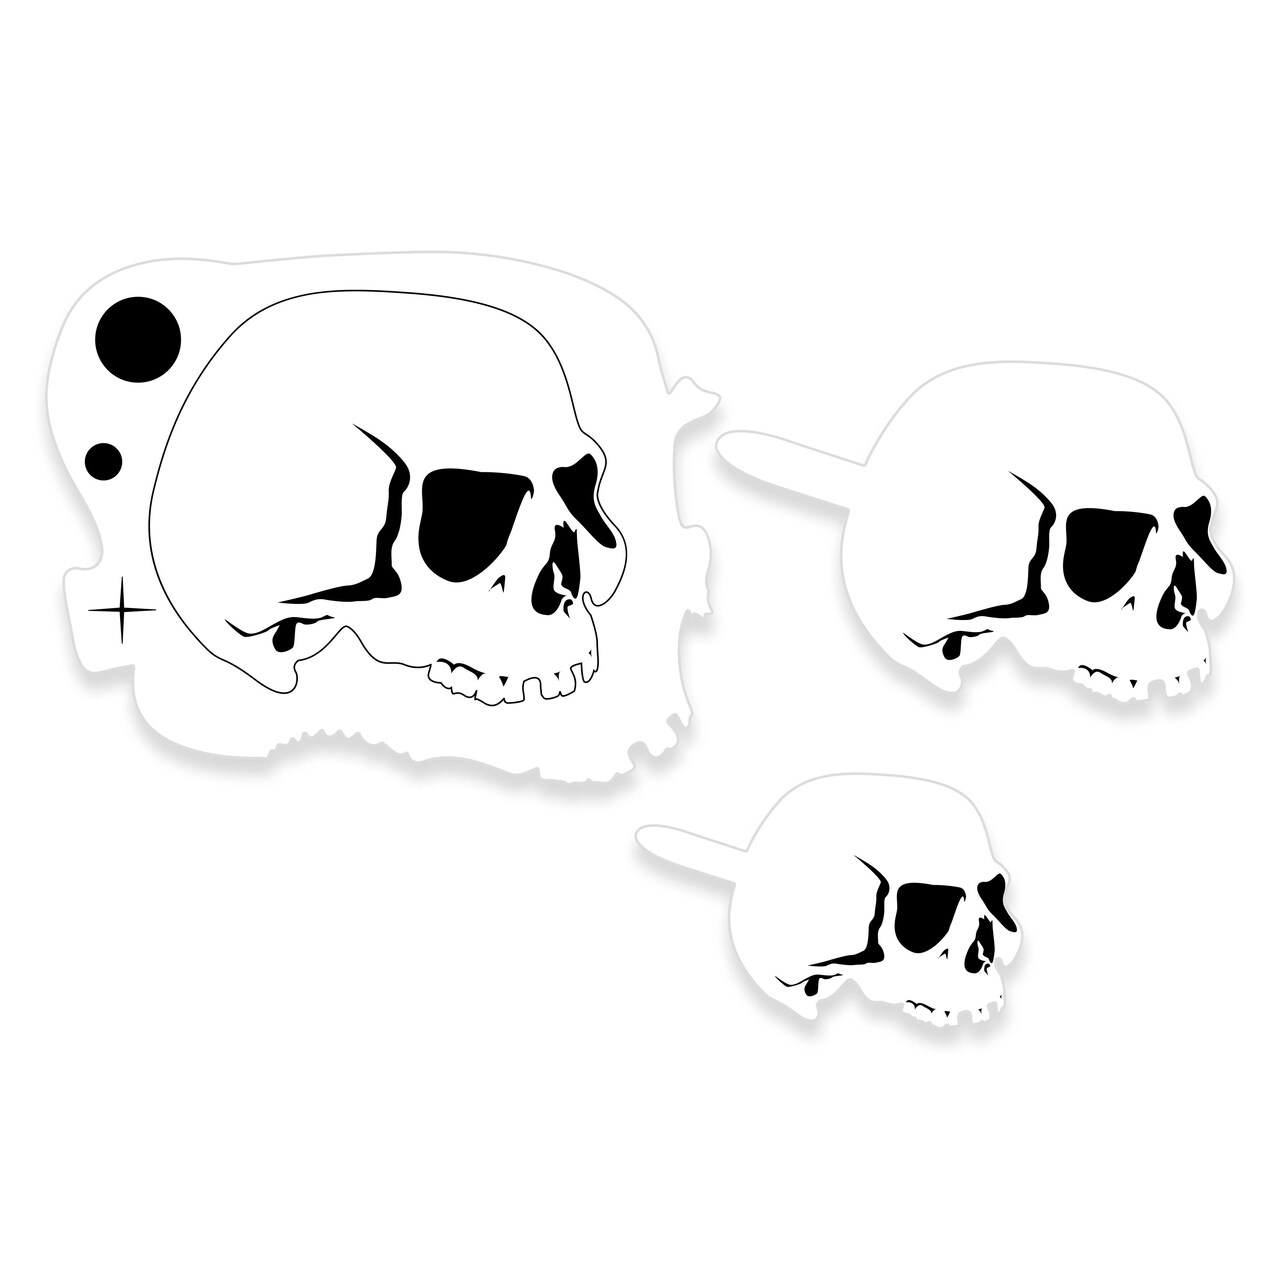 Custom Shop Airbrush Stencil Skull Design Set #5 - 3 Laser Cut